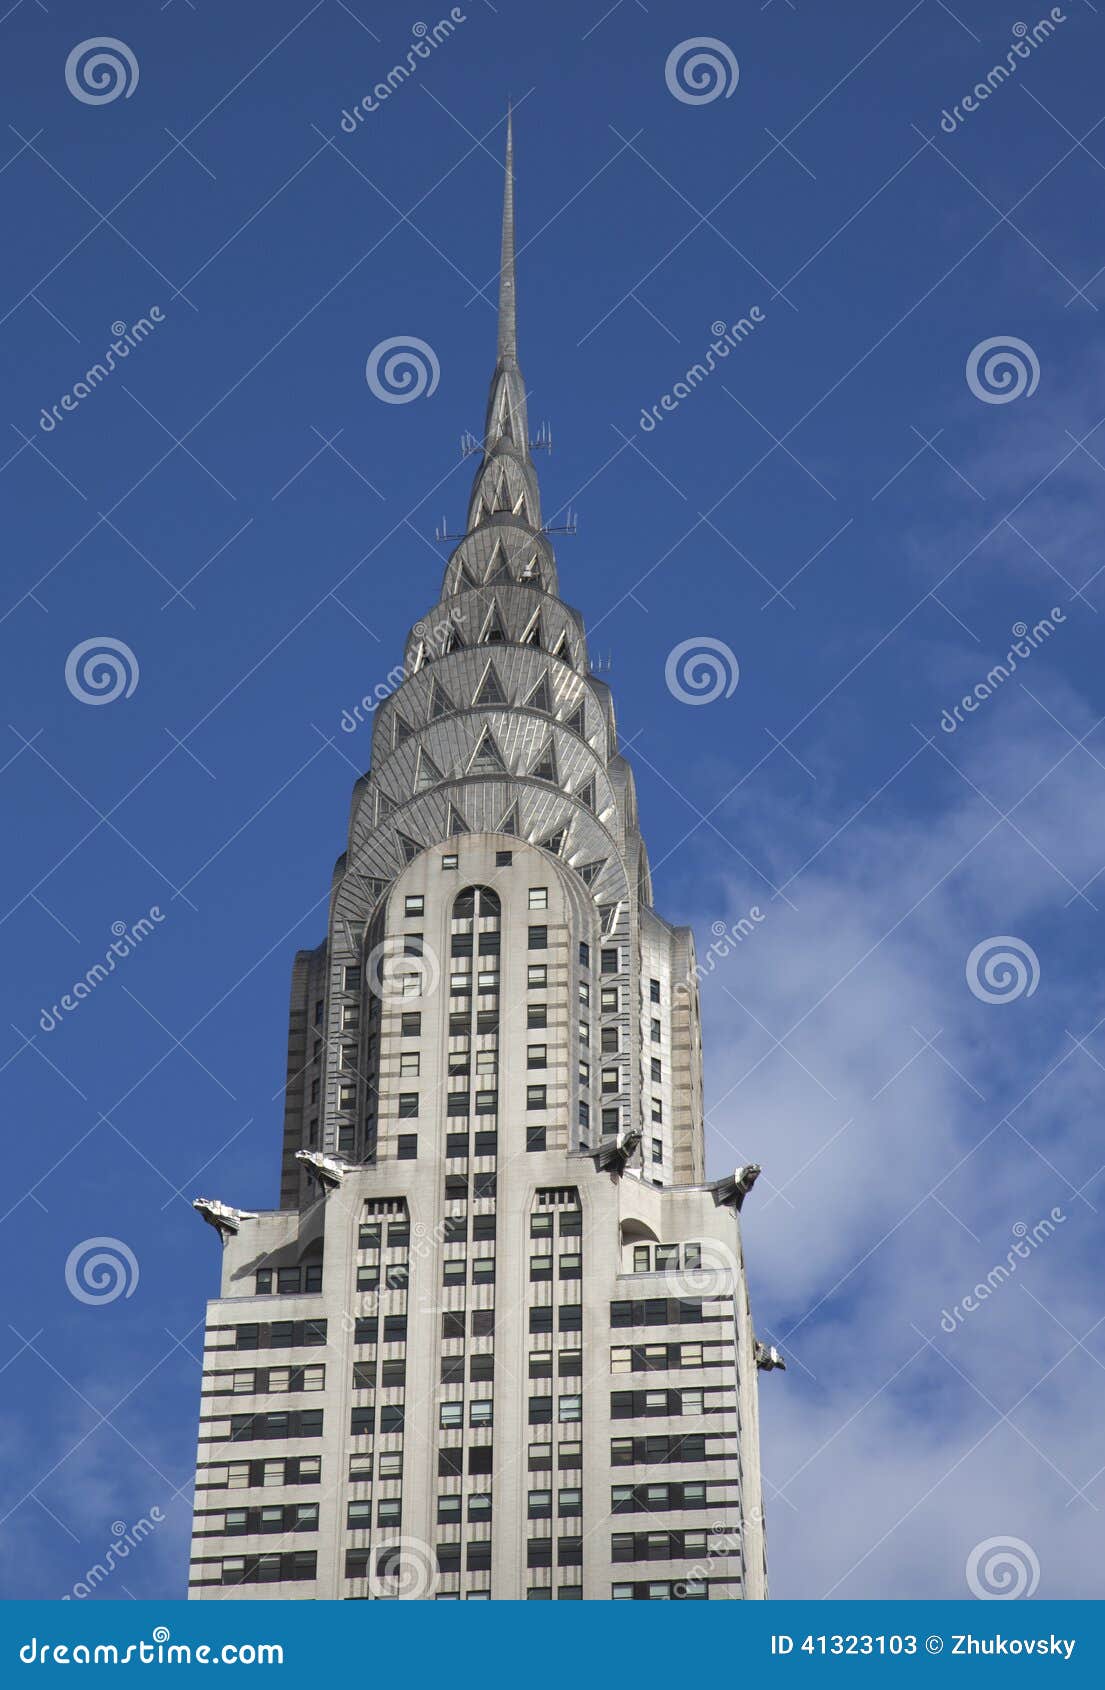 Budynek Chryslera. Chrysler budynek w Nowy Jork budynek był światu s wysokim budynkiem dla 11 miesiąca w 1931